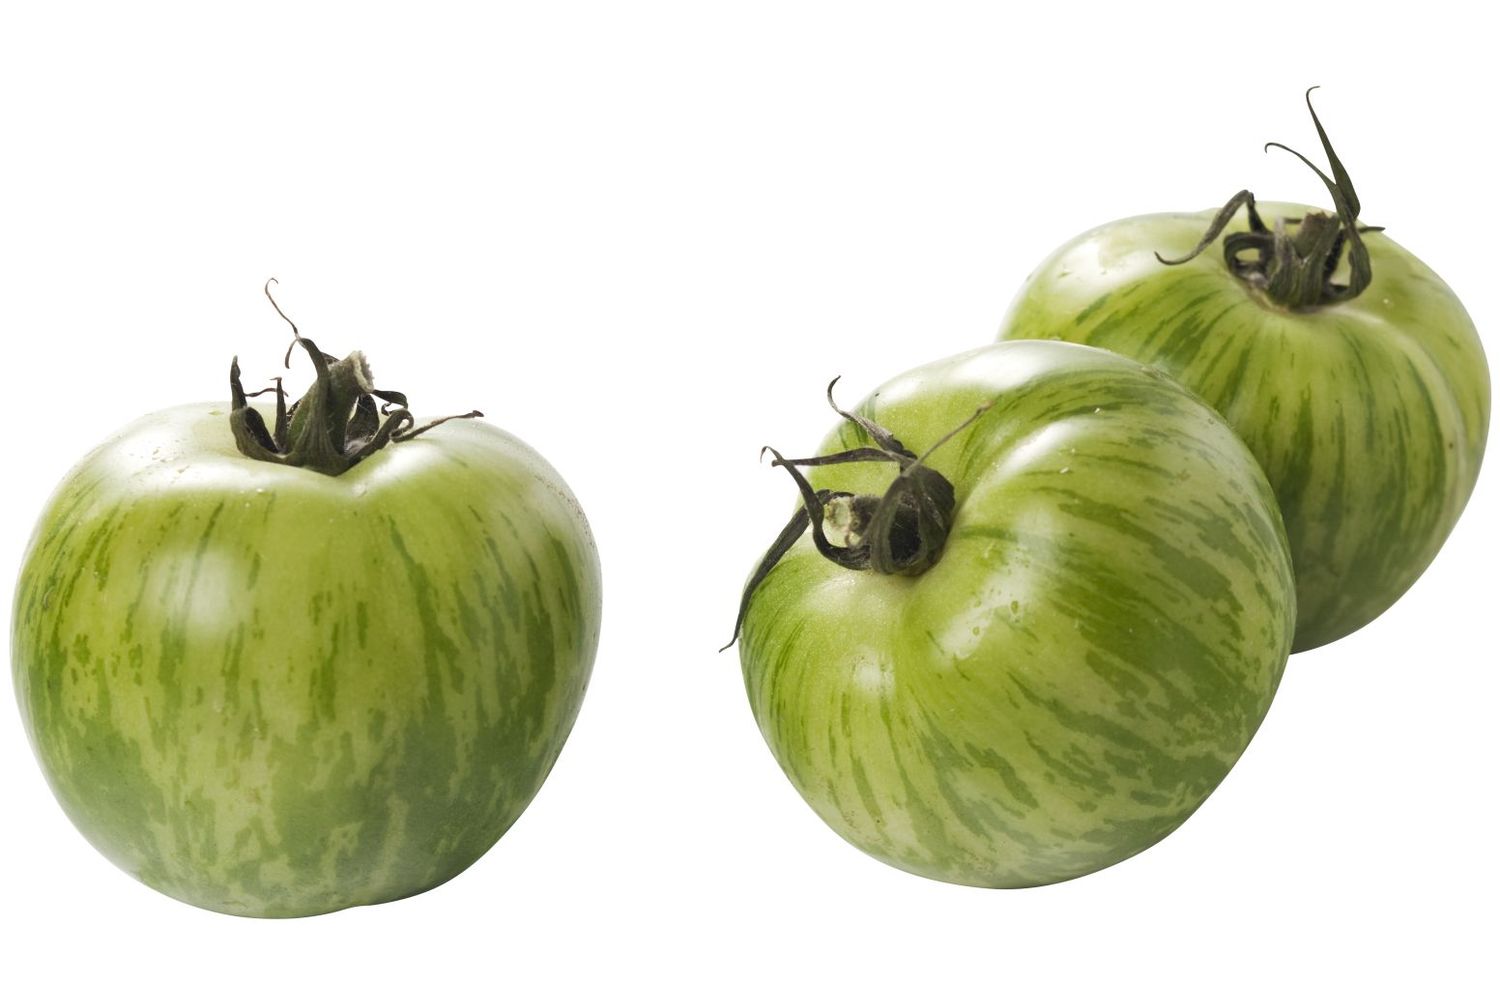 Tijger tomaten groen verpakt 500gr stuk 1